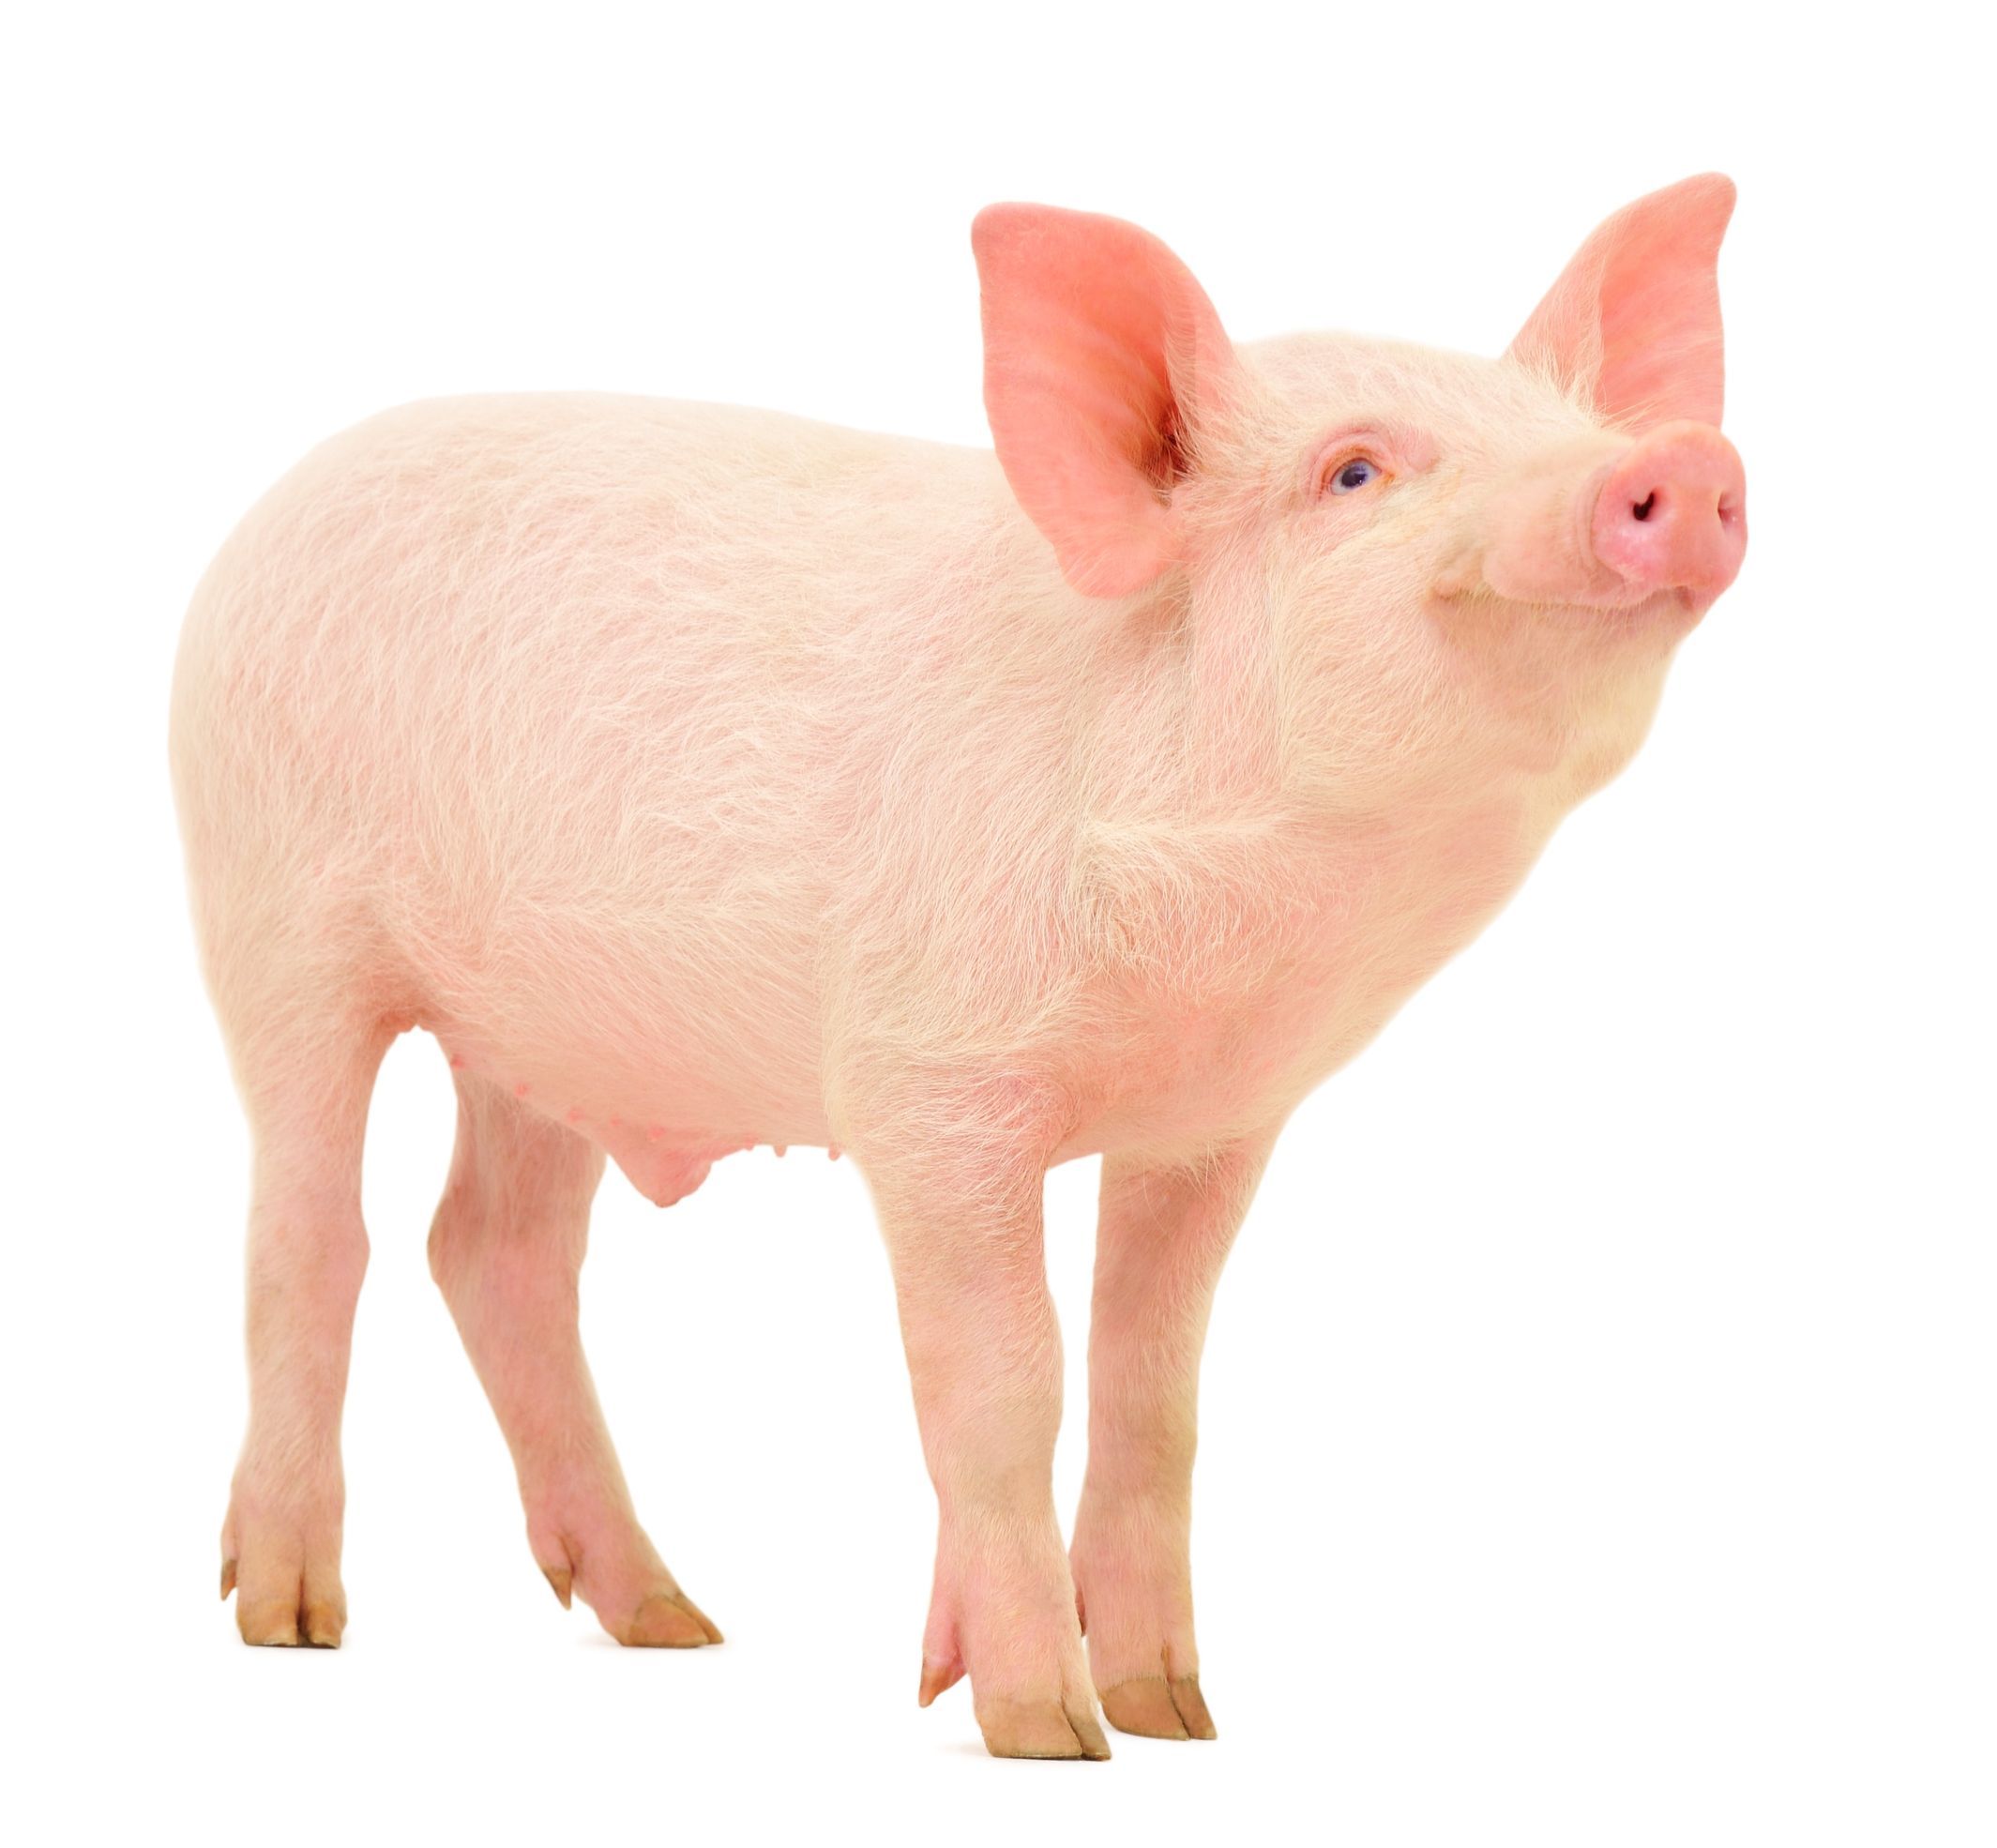 猪年と豚年 人類の豚肉への遥かなる熱い情熱の歴史 The Page Yahoo ニュース